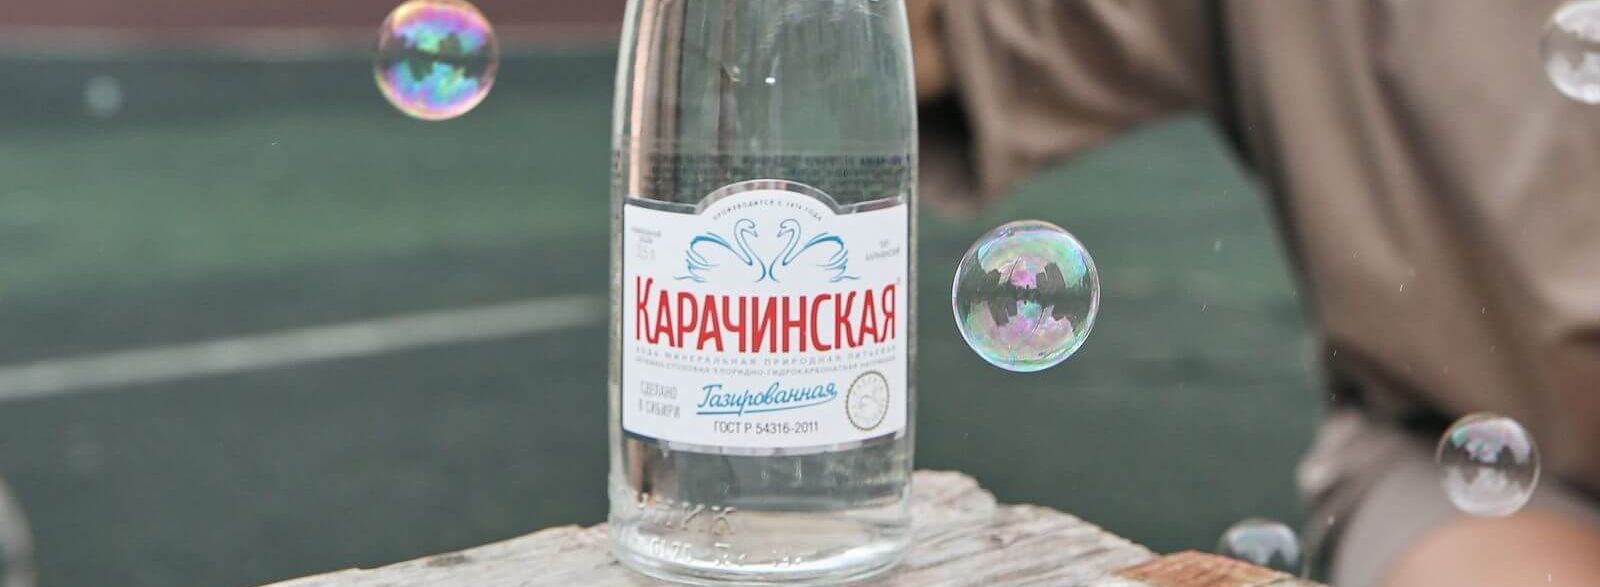 Целебные свойства минеральной воды «Карачинская» научно доказаны